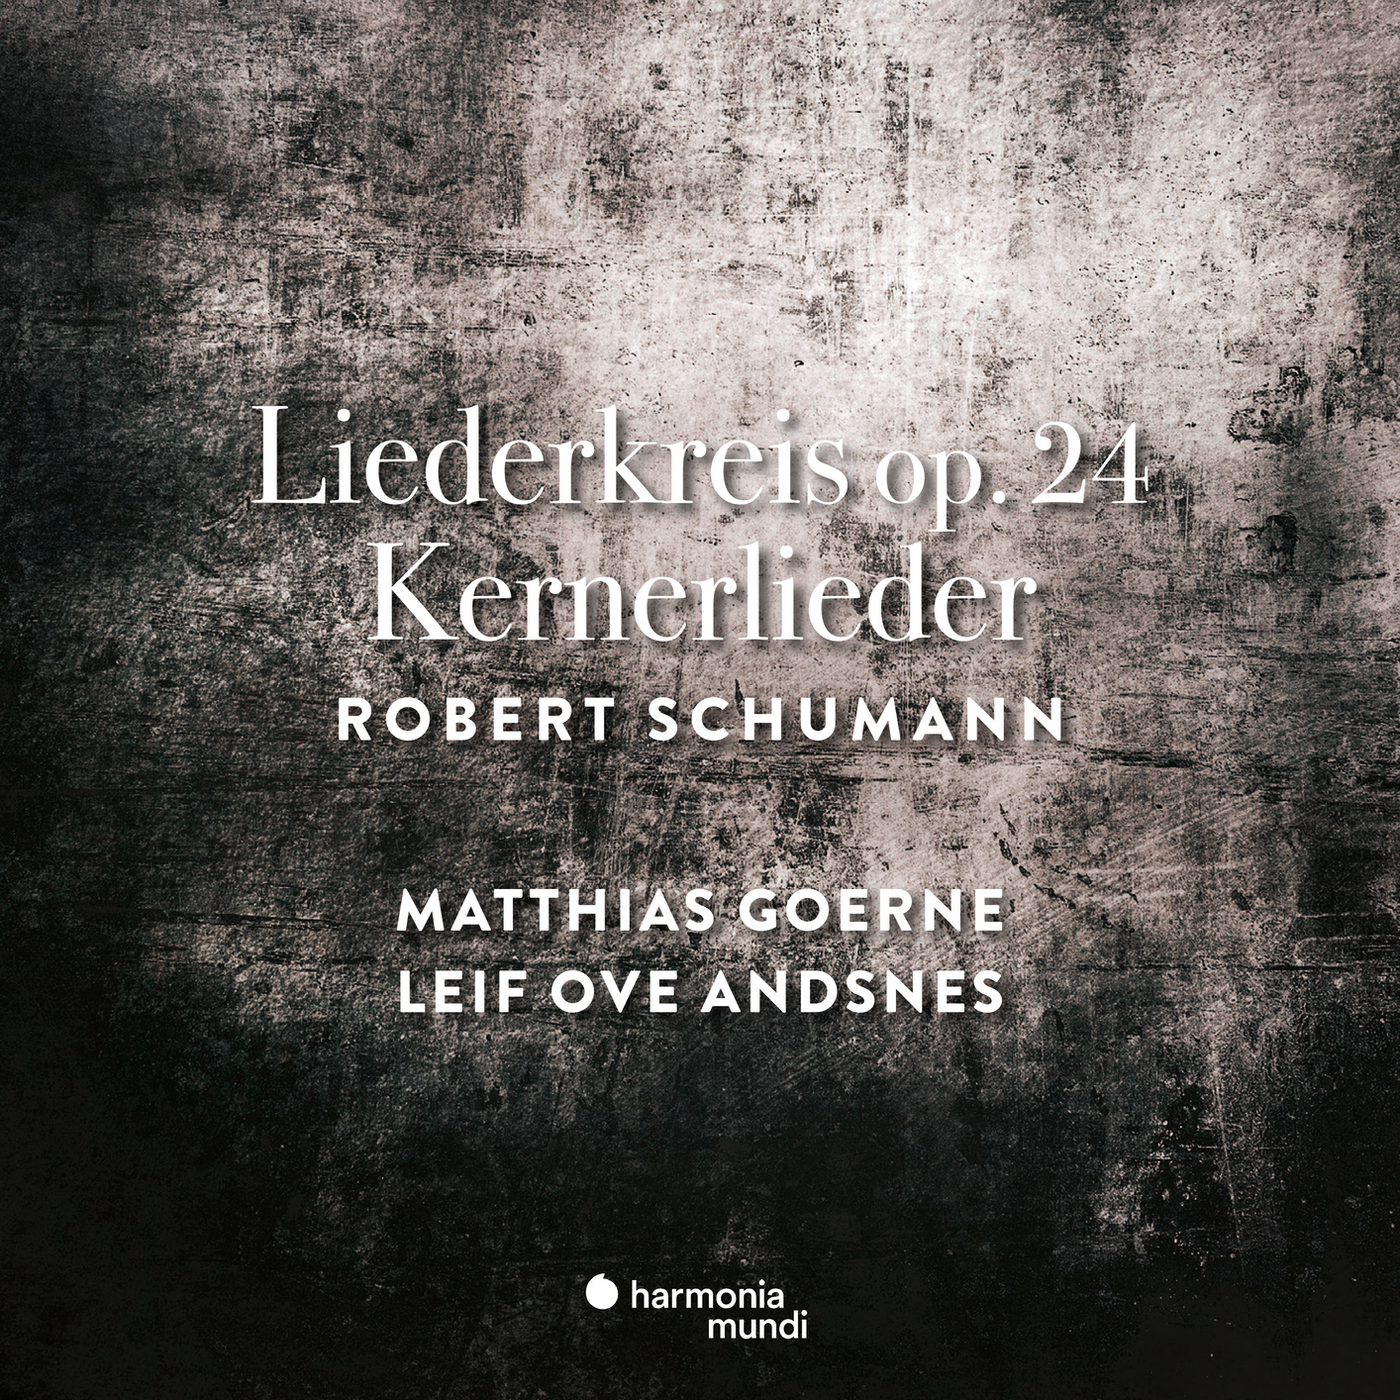 Matthias Goerne & Leif Ove Andsnes - Schumann: Liederkreis Op. 24 & Kernerlieder, Op. 35 (2019) [FLAC 24bit/96kHz]